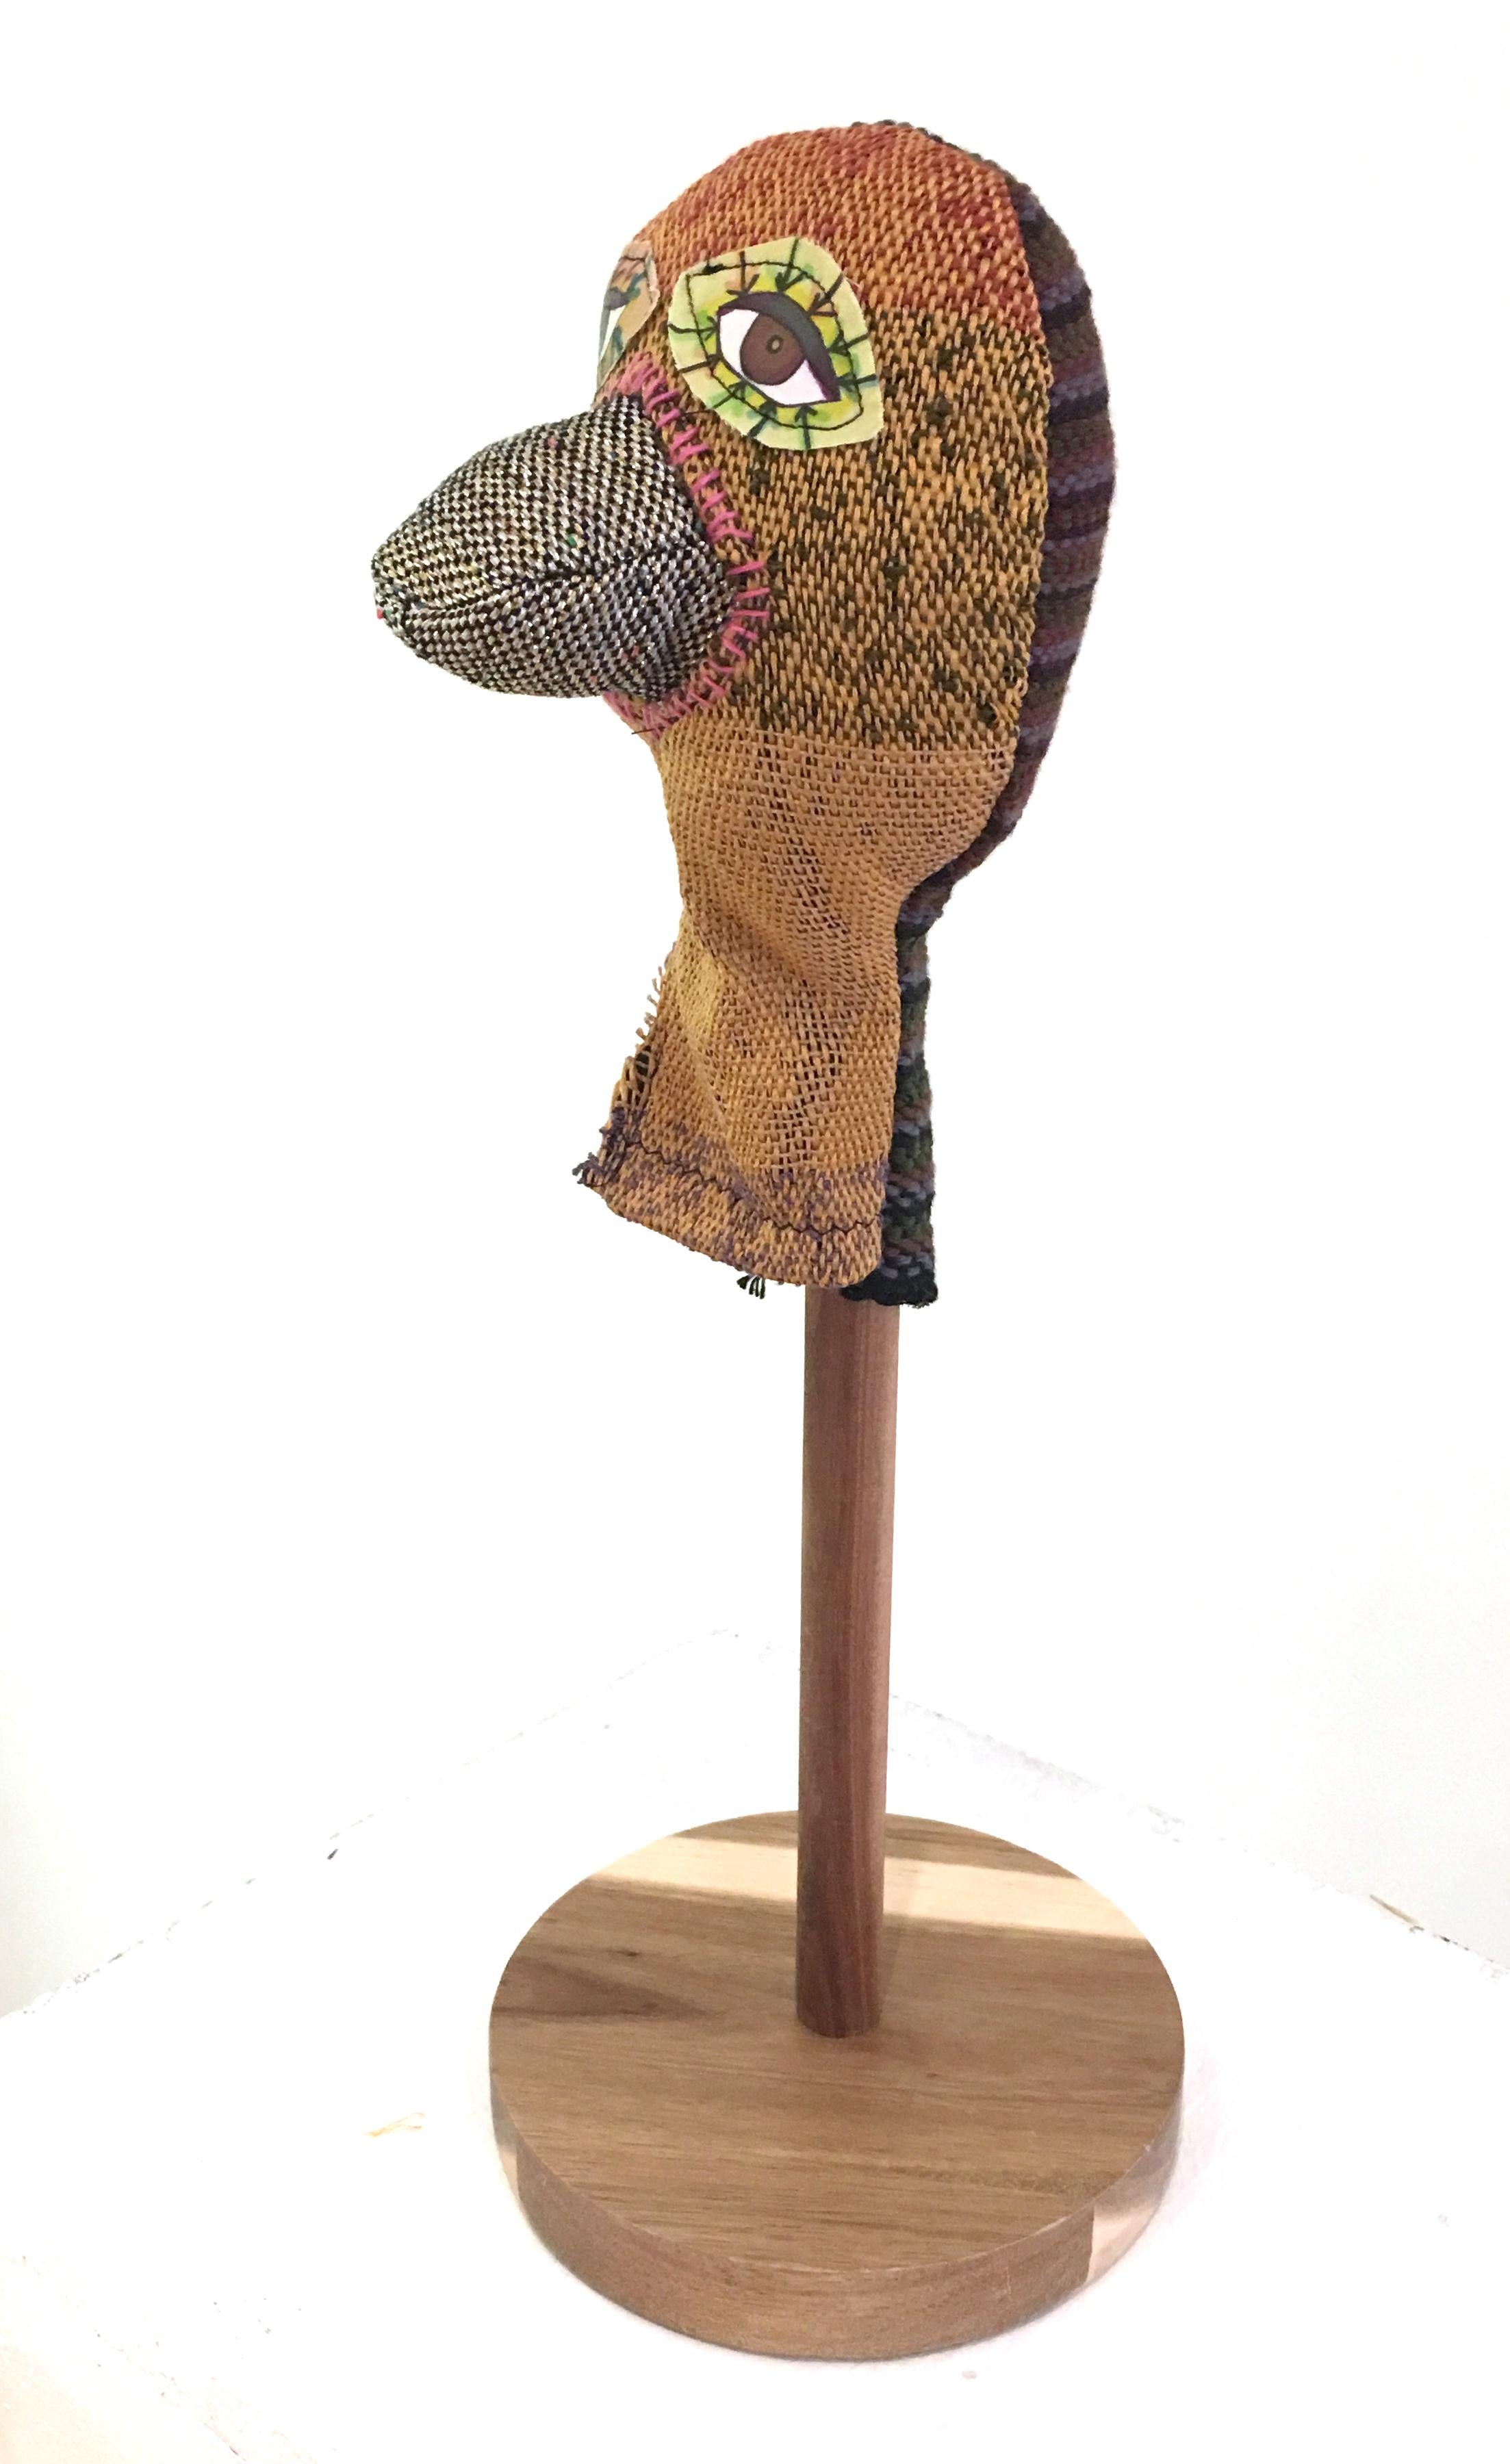 Handwoven Textile Sculpture: 'I am Puppet' (beak) - Contemporary Mixed Media Art by Juliet Martin